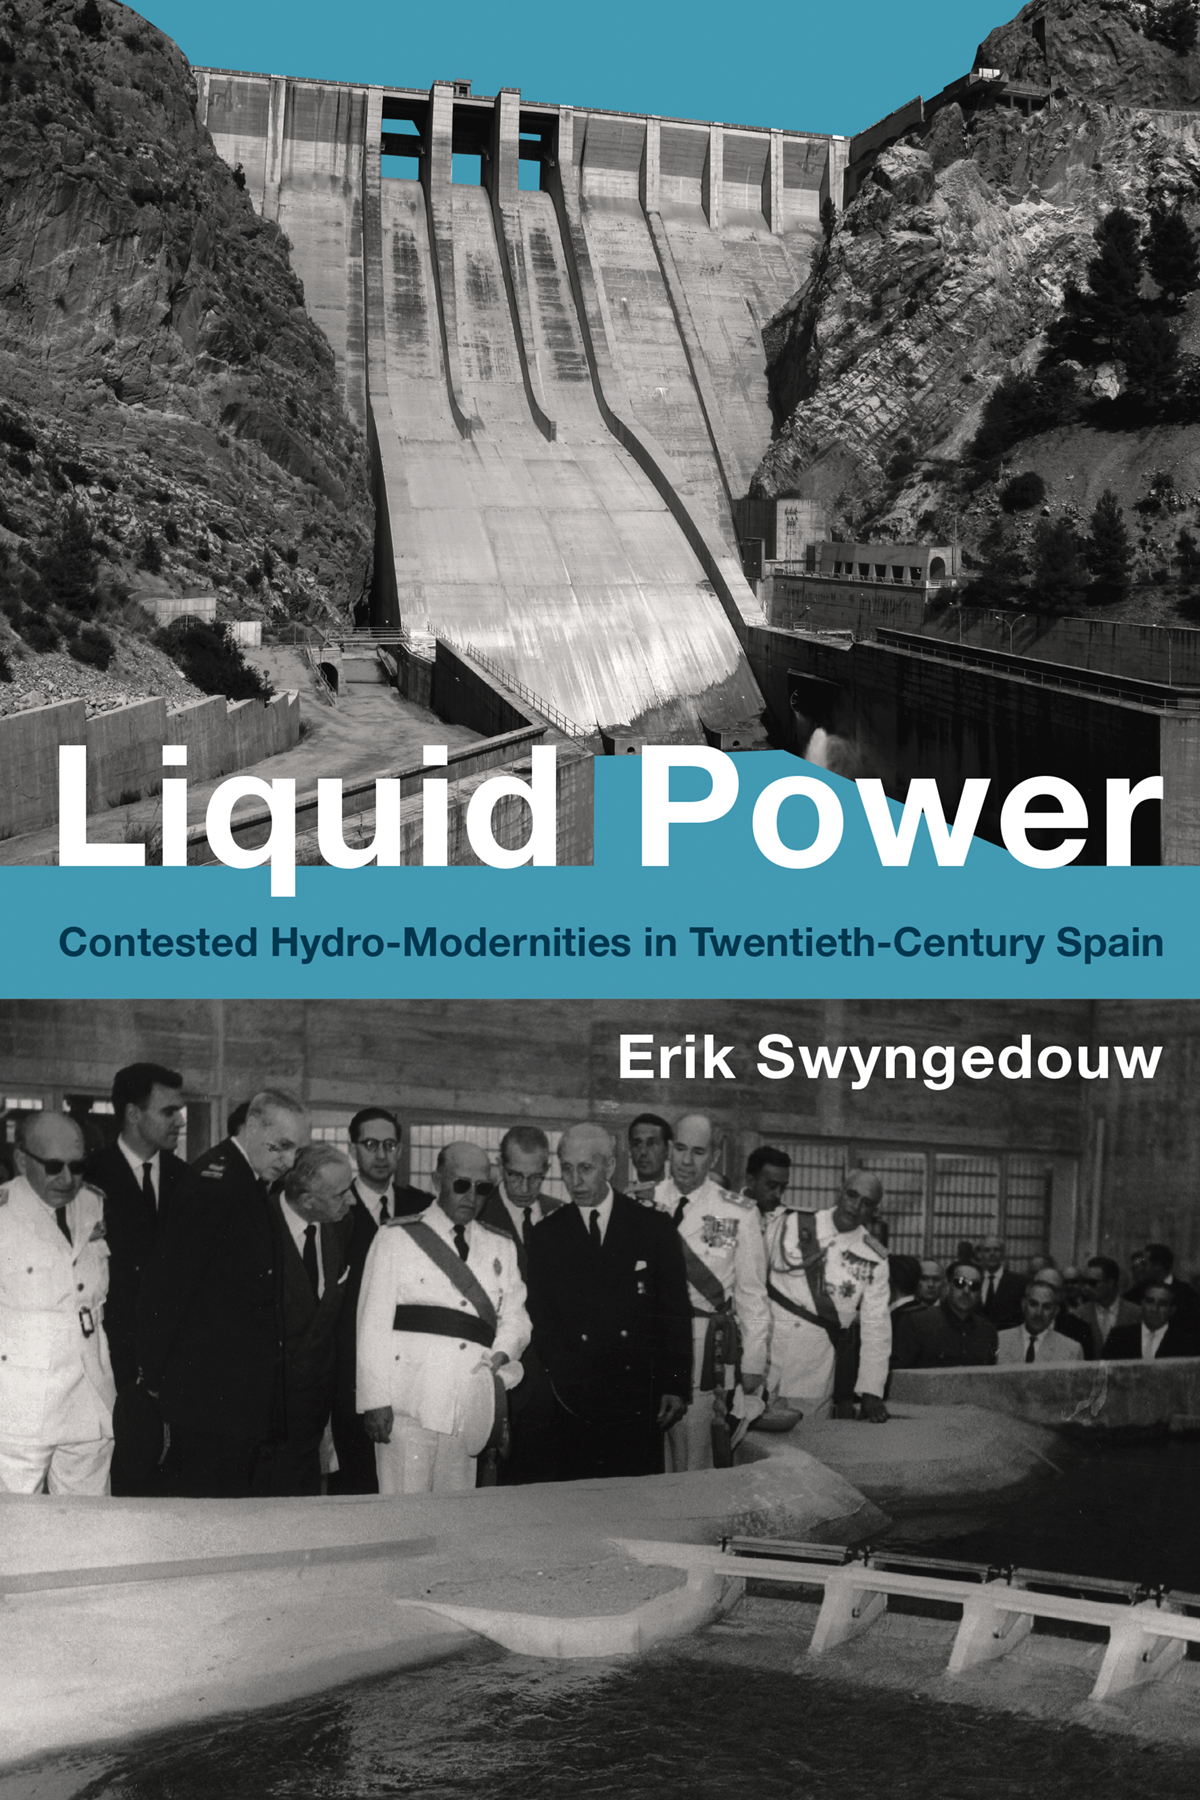 "Liquid Power": An interview with Erik Swyngedouw